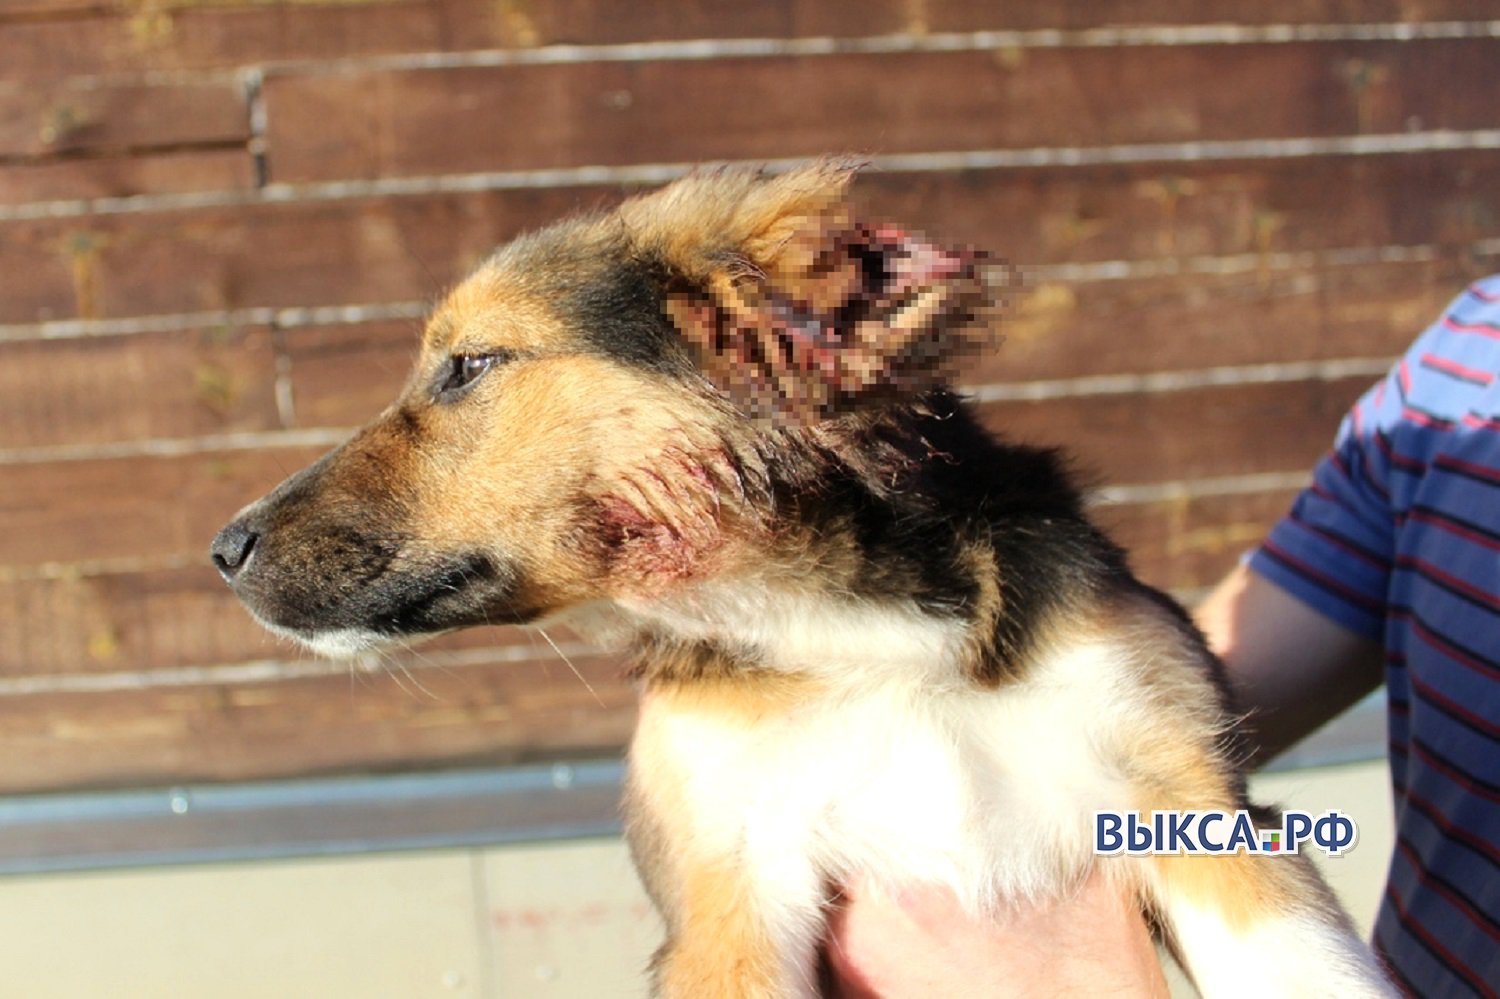 Полиция заинтересовалась щенком с отрезанными ушами и хвостом